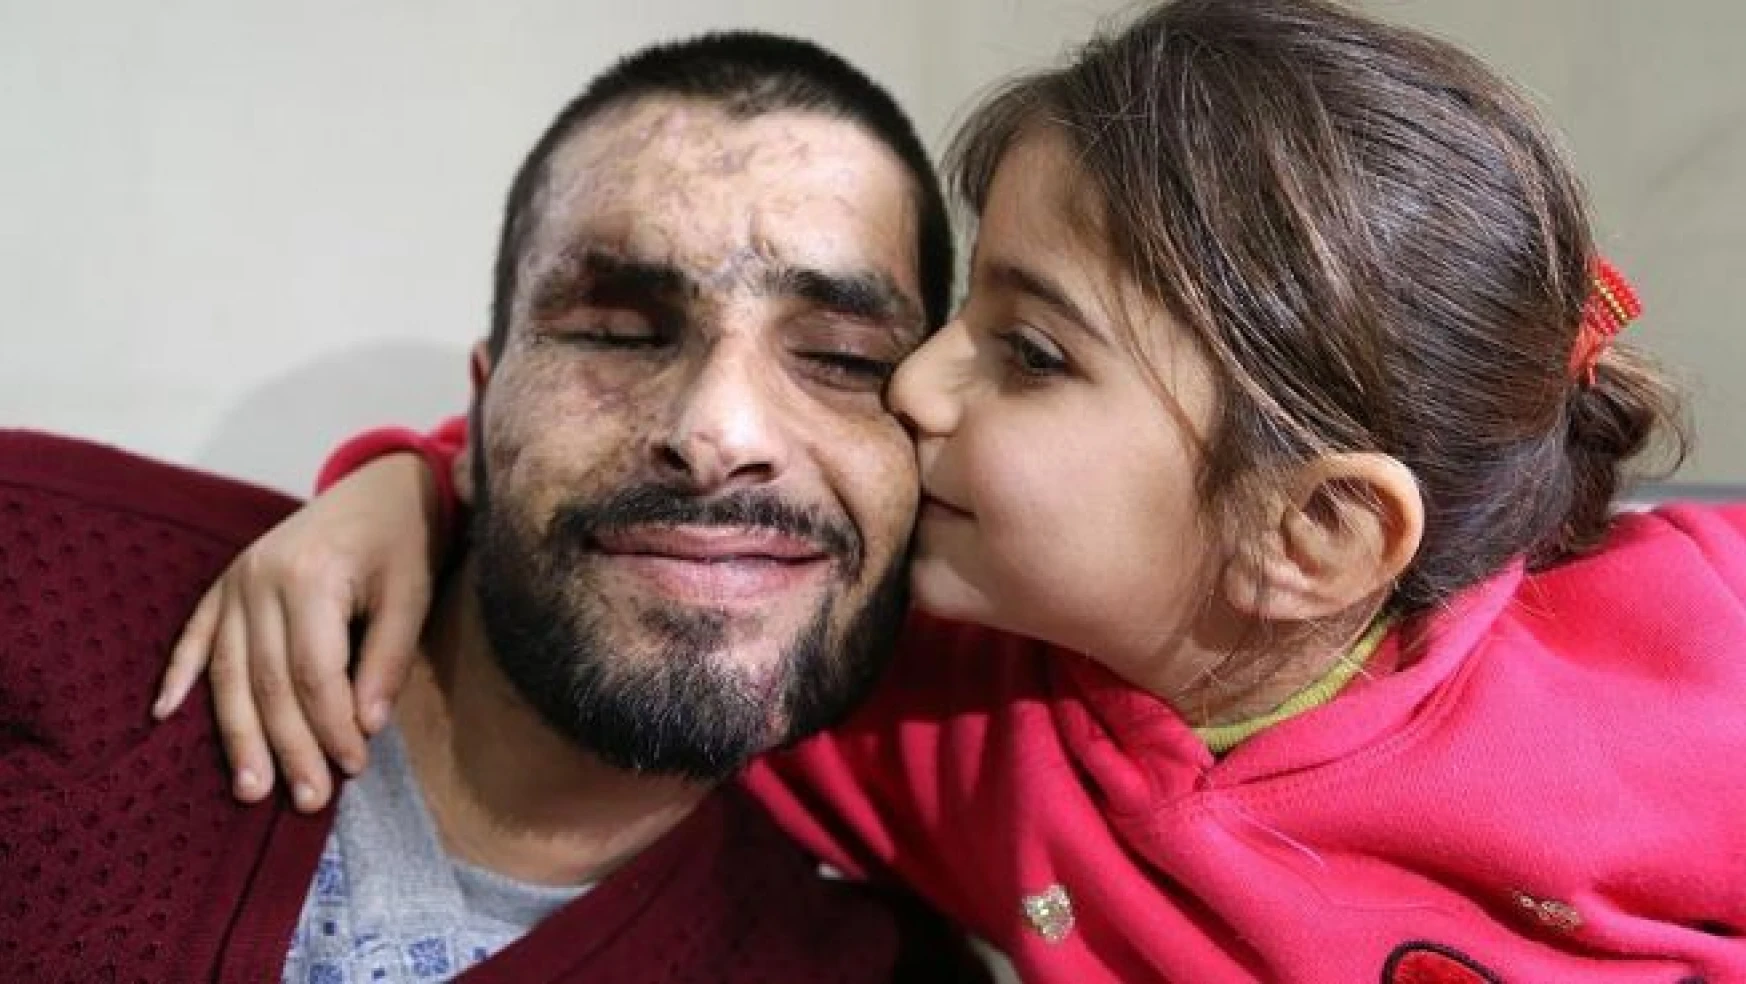 Suriye'de gözlerini, iki bacağını ve işitme yetisini kaybetti, Türkiye'de ise...